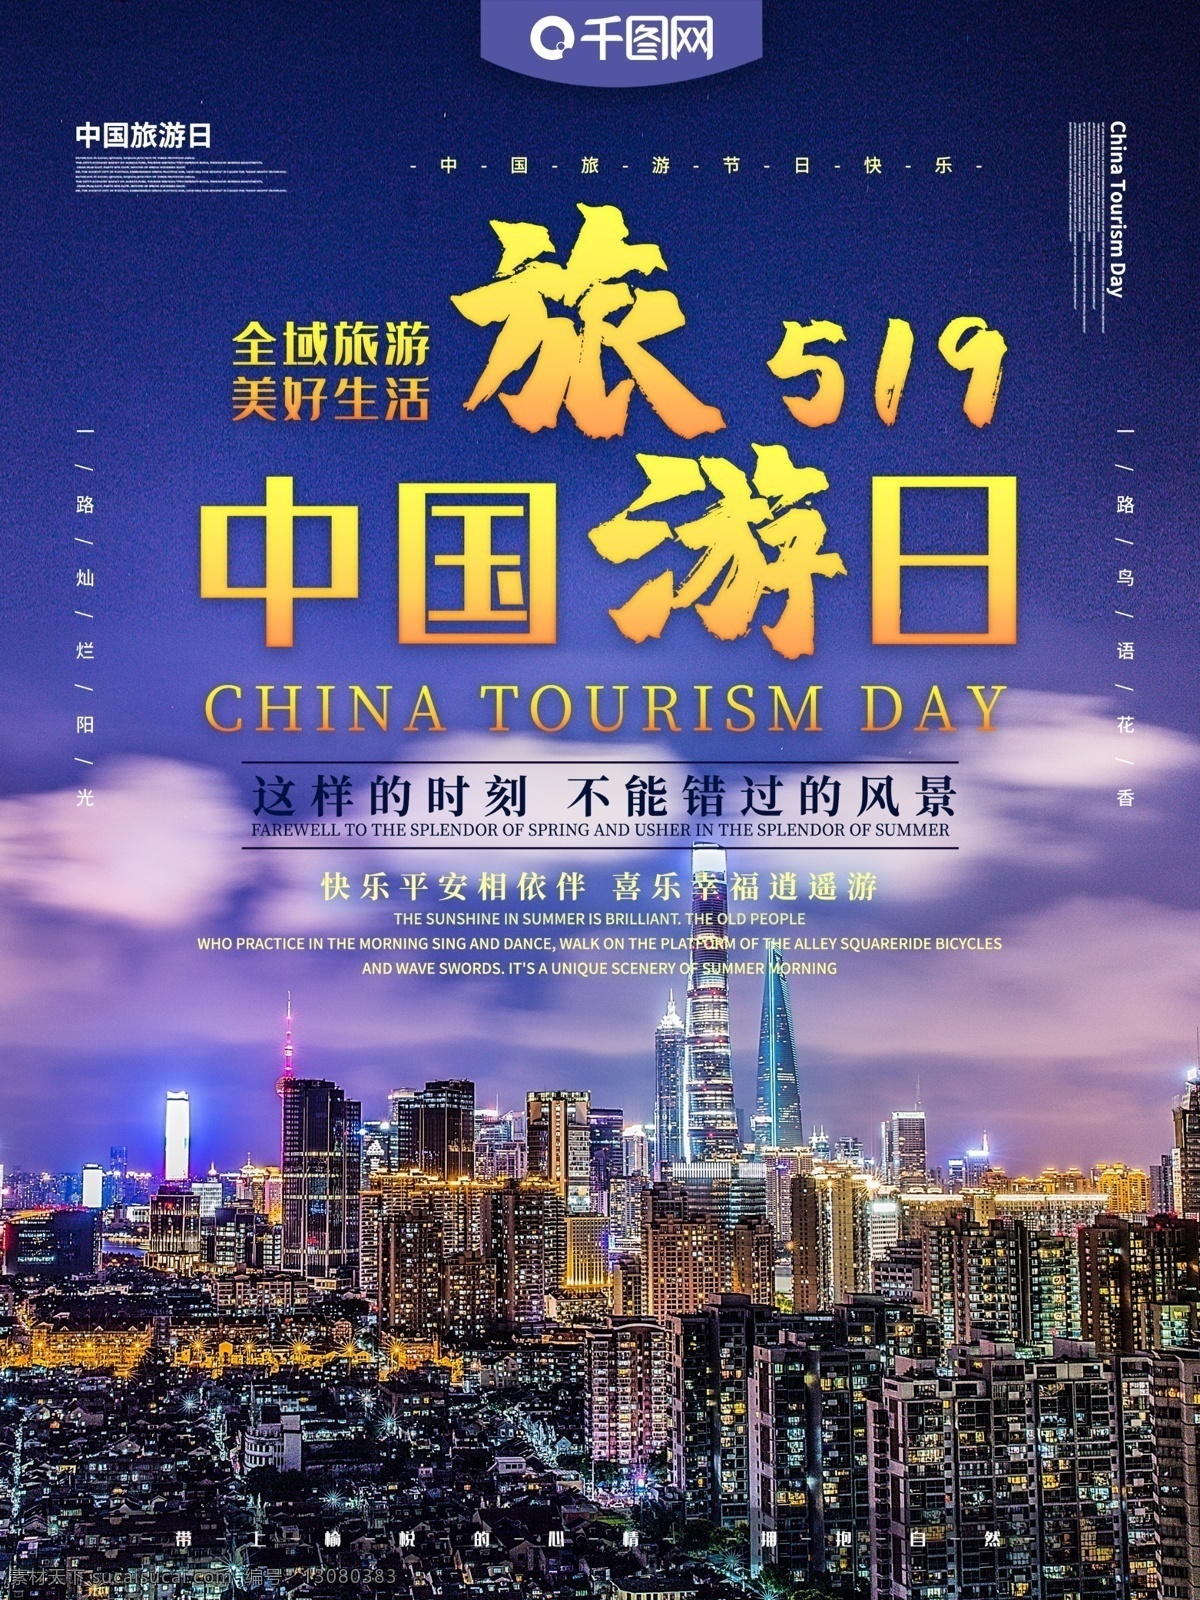 中国旅游 日 主题 海报 中国旅游日 旅游 旅游日 世界旅游日 旅行